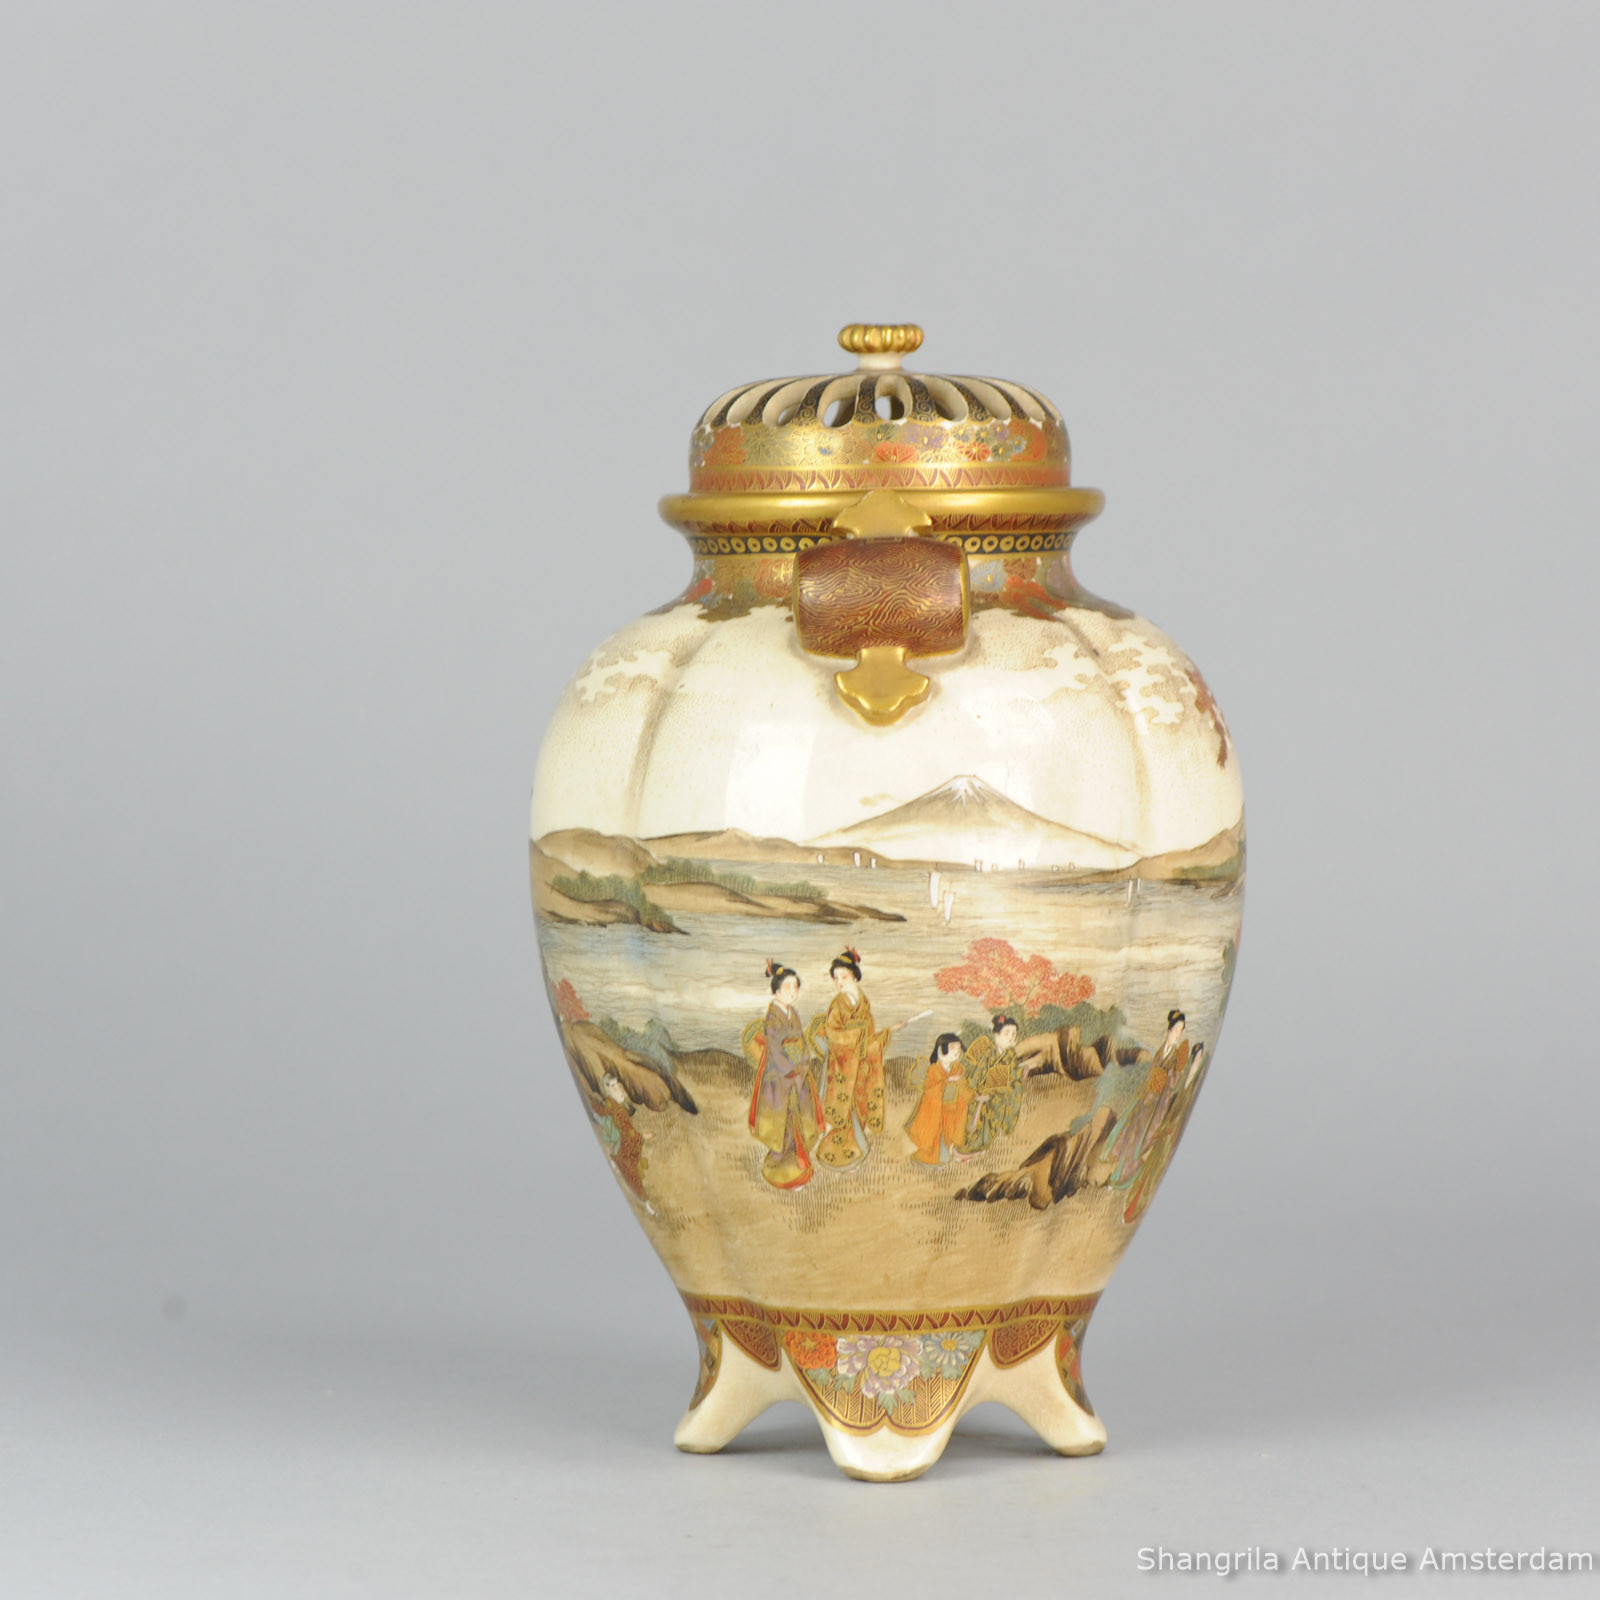 26 Fantastic Satsuma Porcelain Vase 2022 free download satsuma porcelain vase of shangrila antique with sold